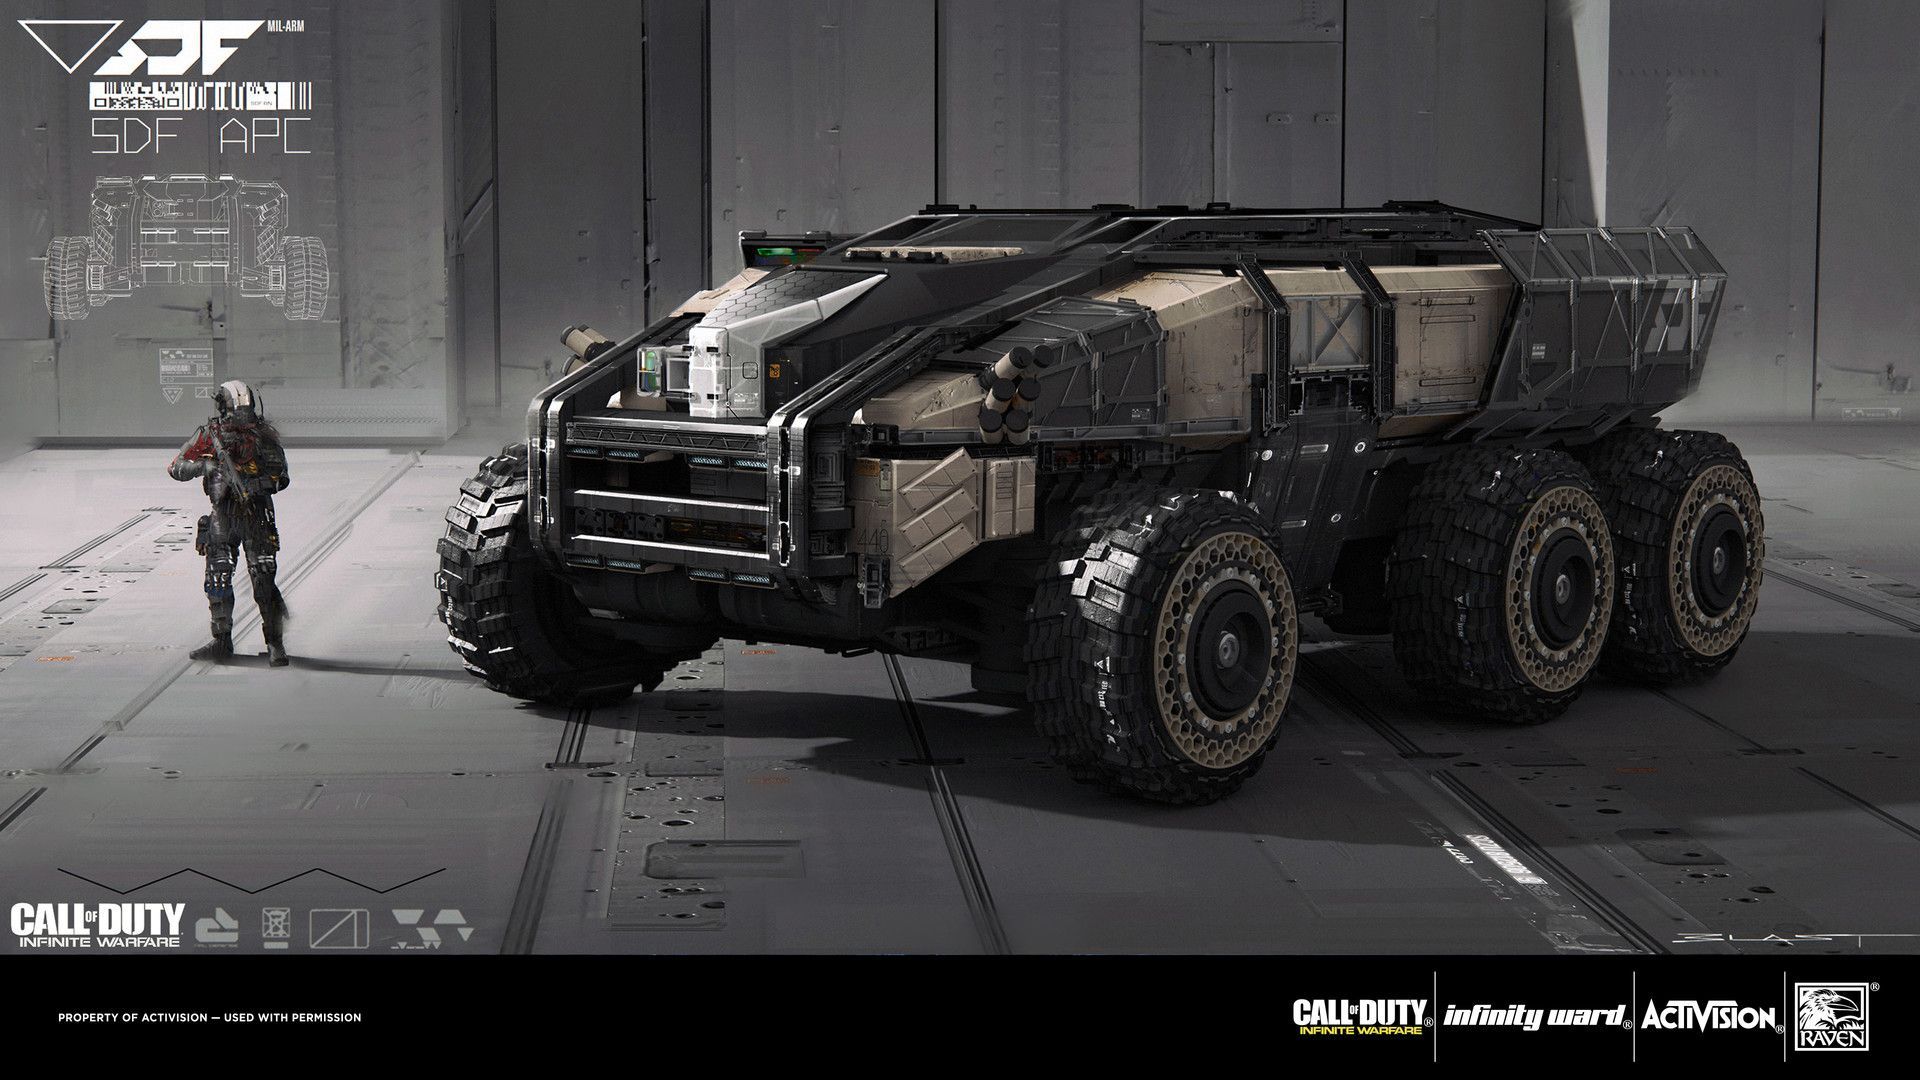 Call Of Duty: Infinite Warfare SDF APC, Benjamin Last. Star citizen, Infinite warfare, Futuristic cars